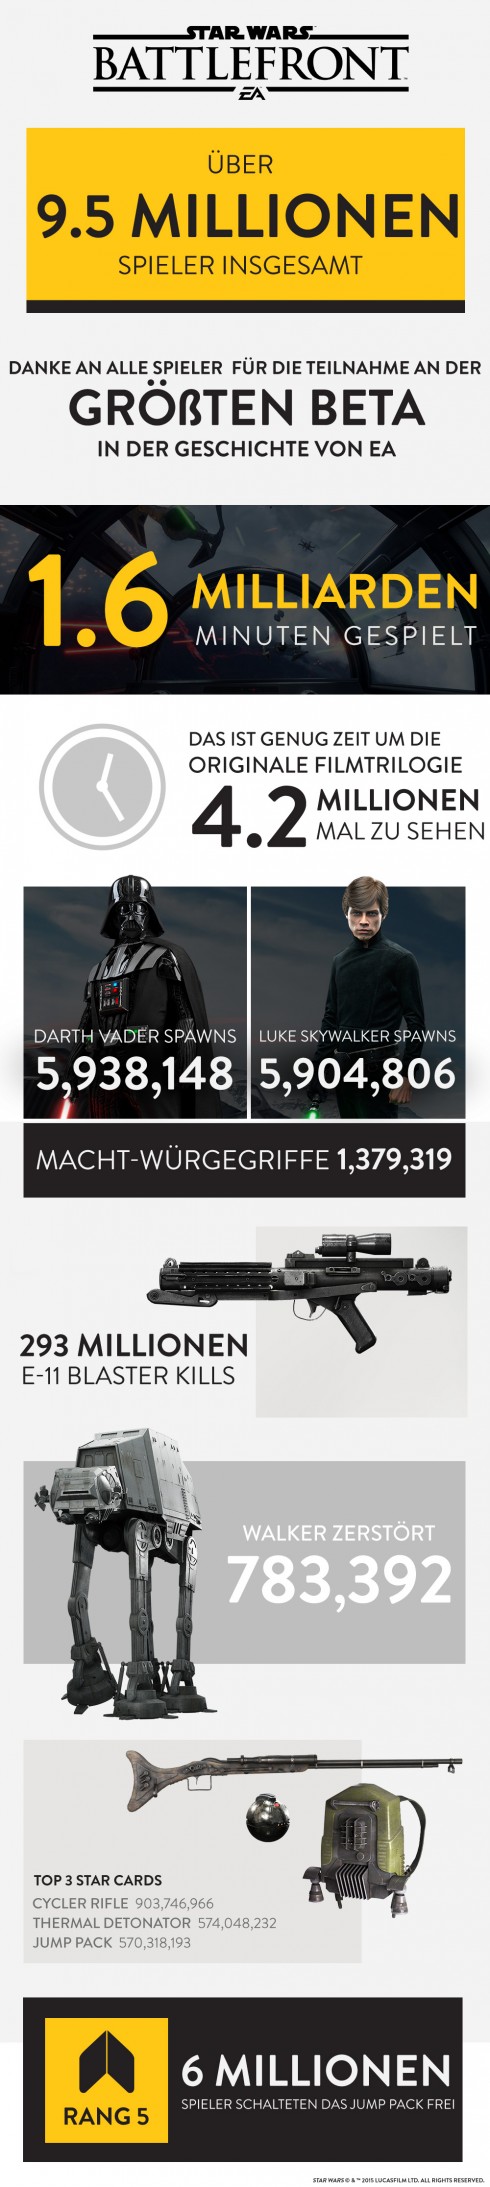 Star Wars Battlefront - Statistik zur Beta